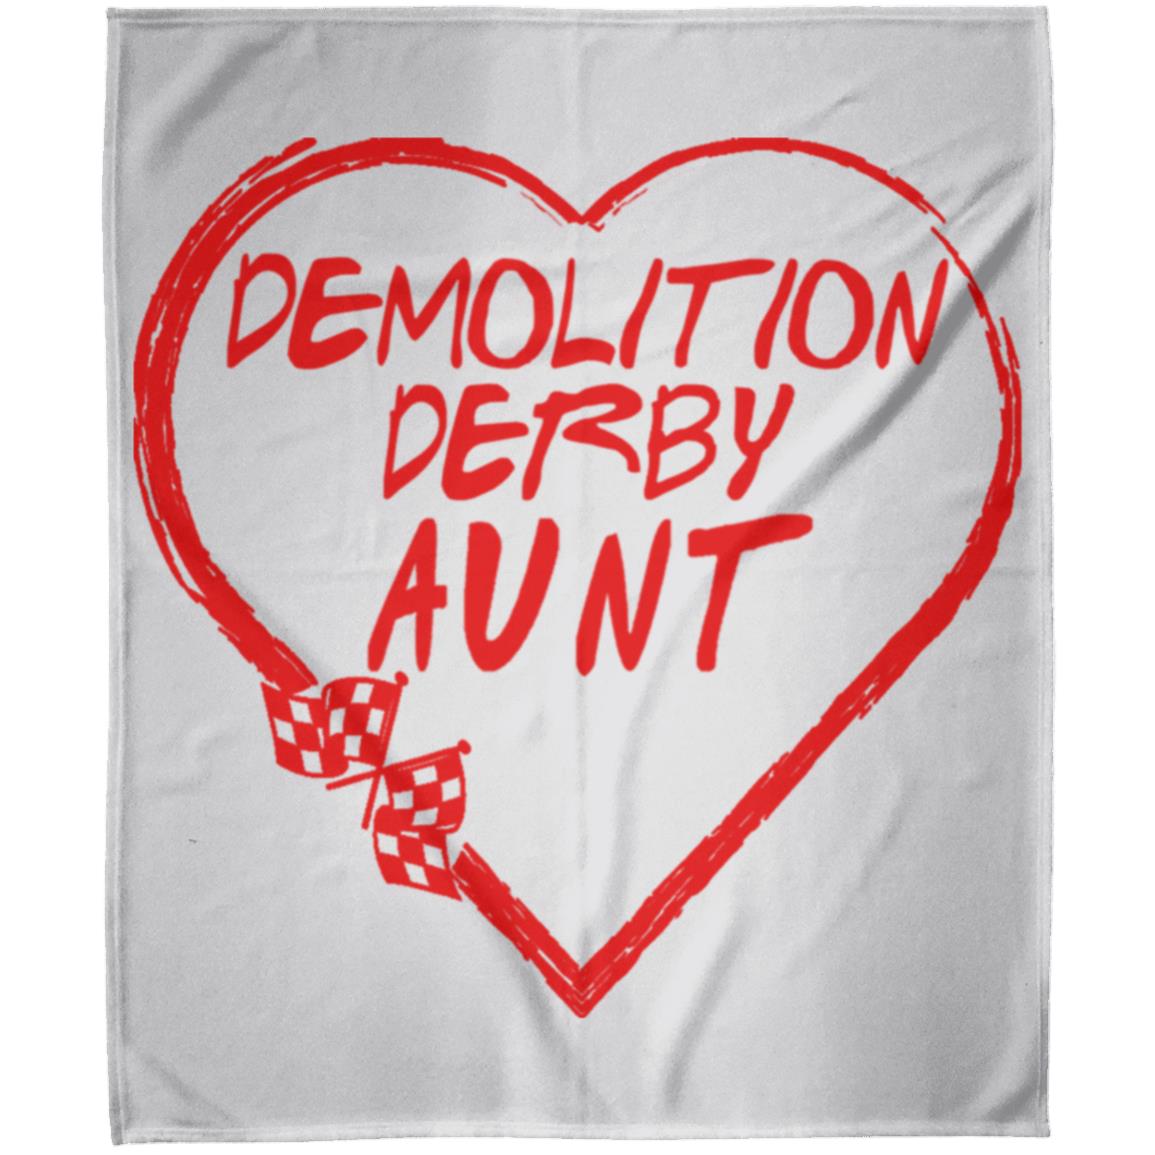 Demolition Derby Aunt Heart Arctic Fleece Blanket 50x60